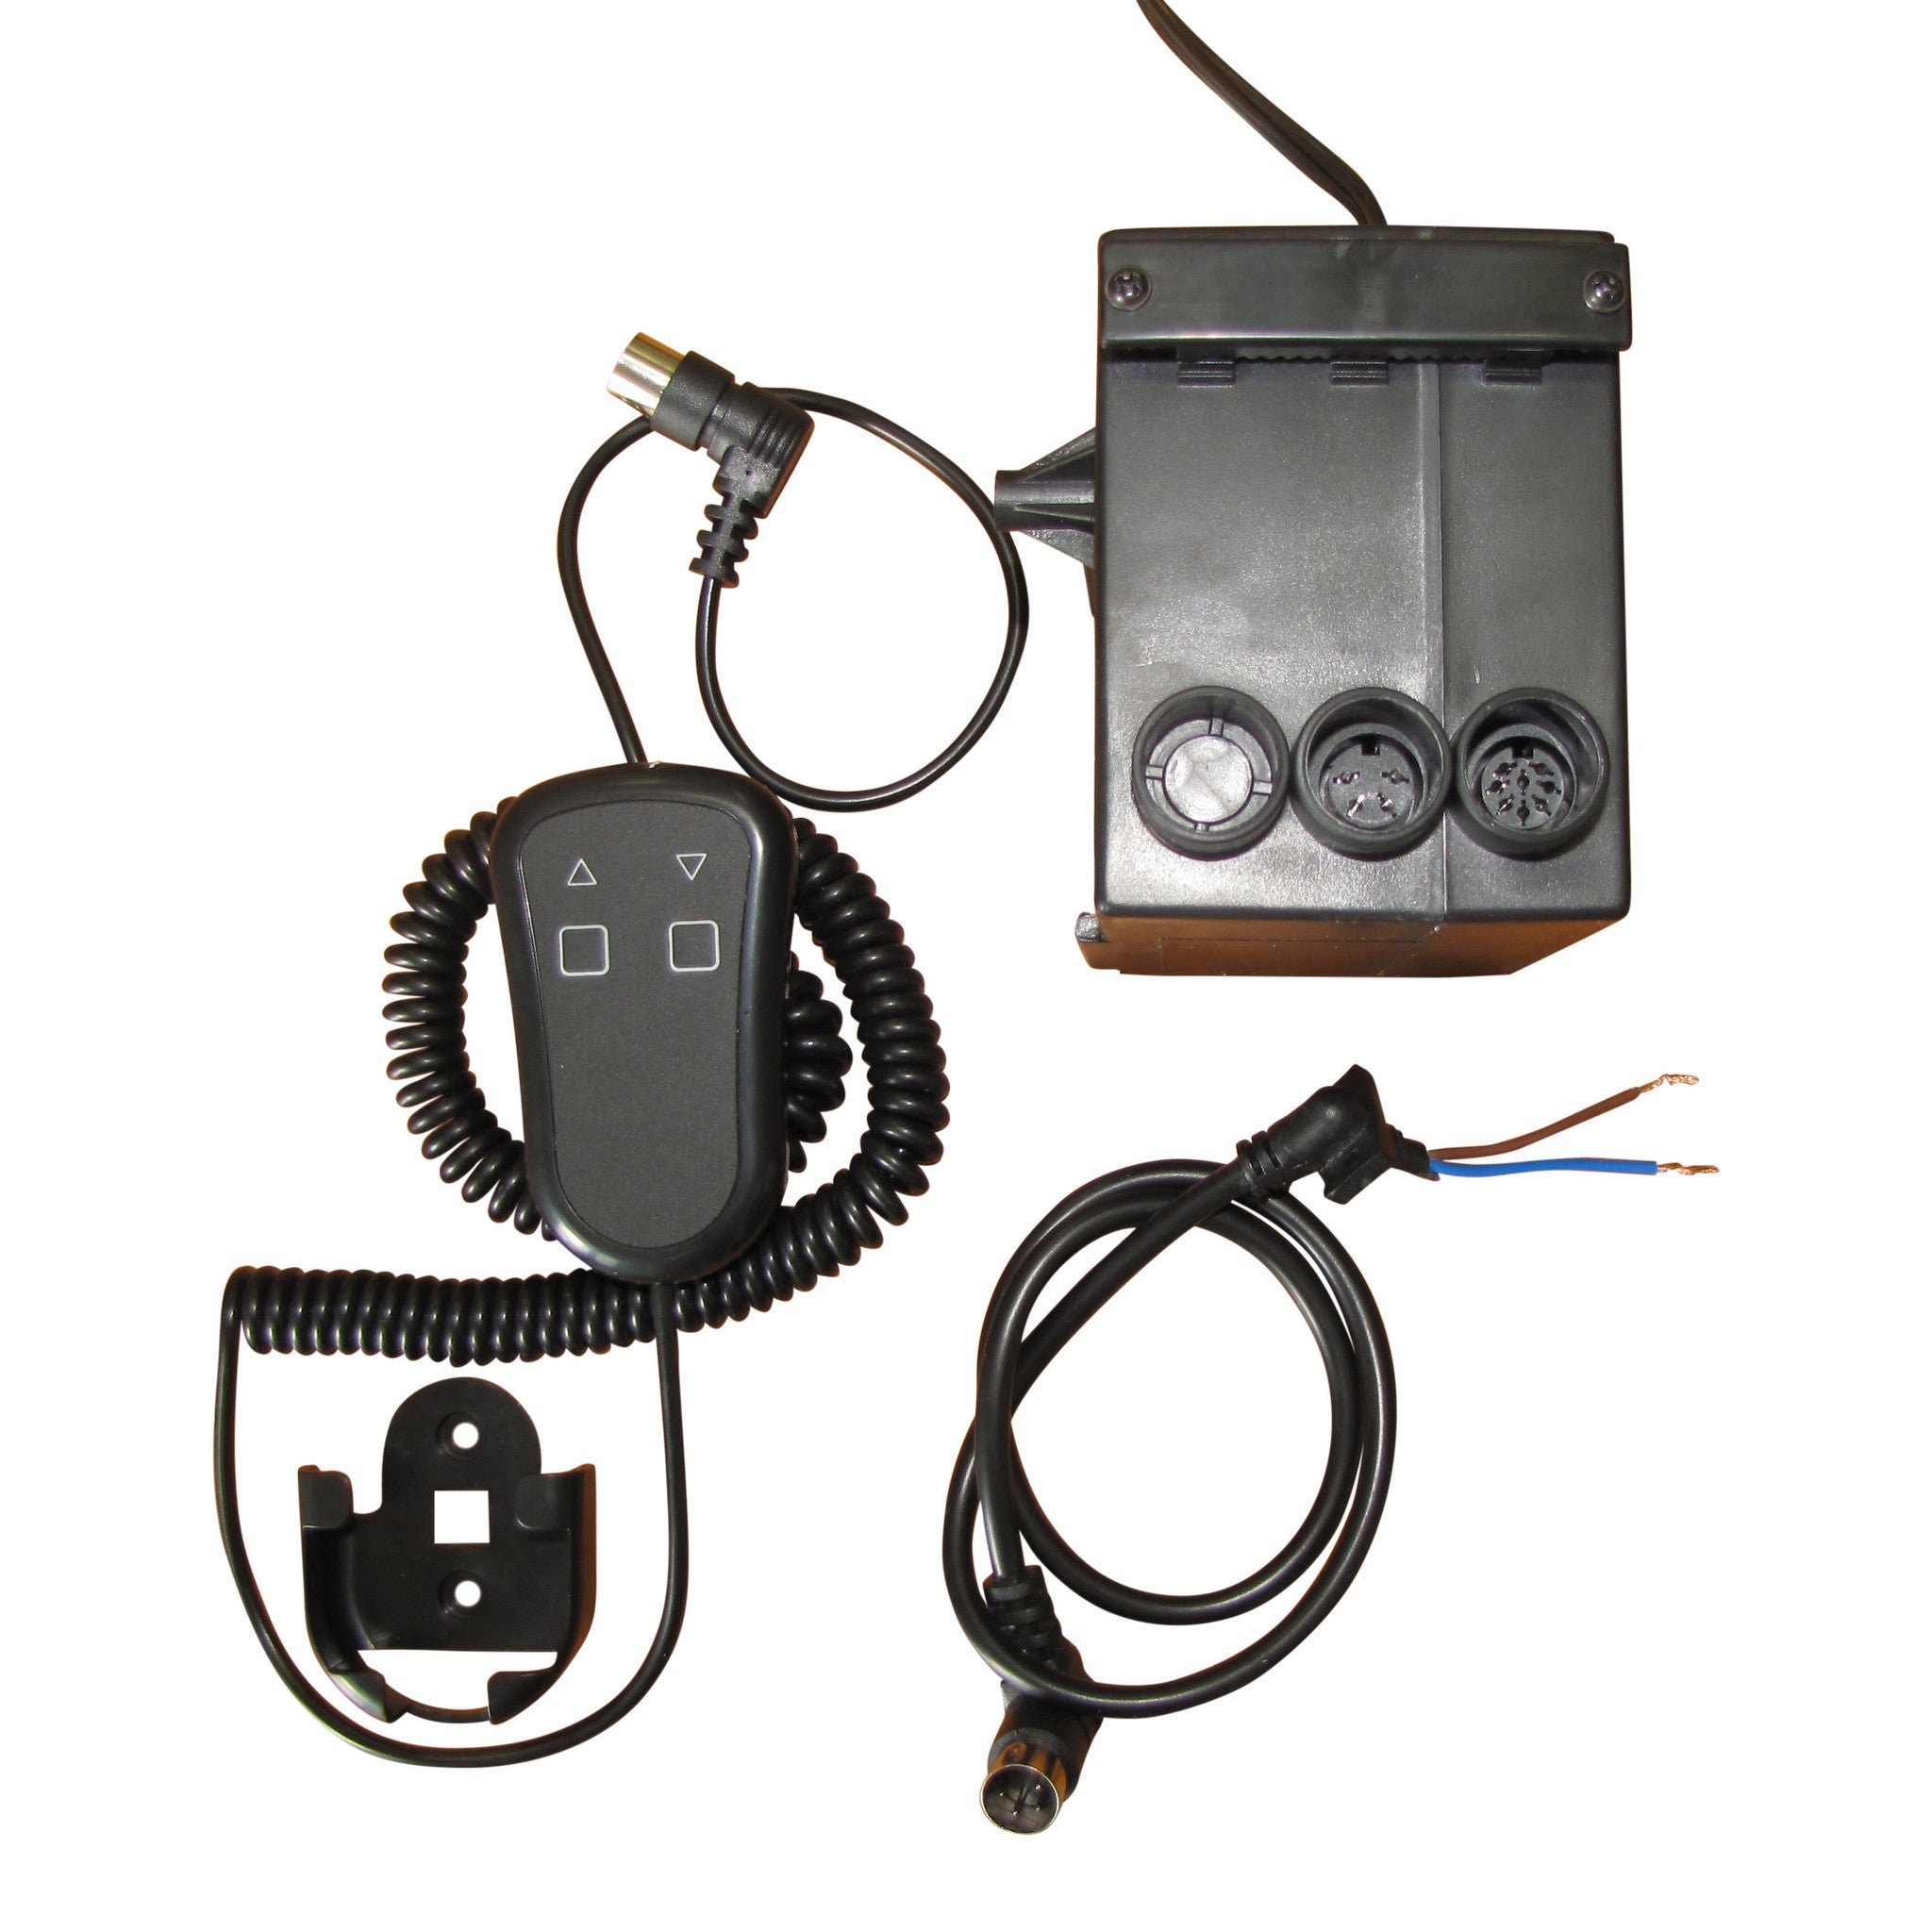 Sistema de control por cable portátil para actuadores - CSPS Product Image